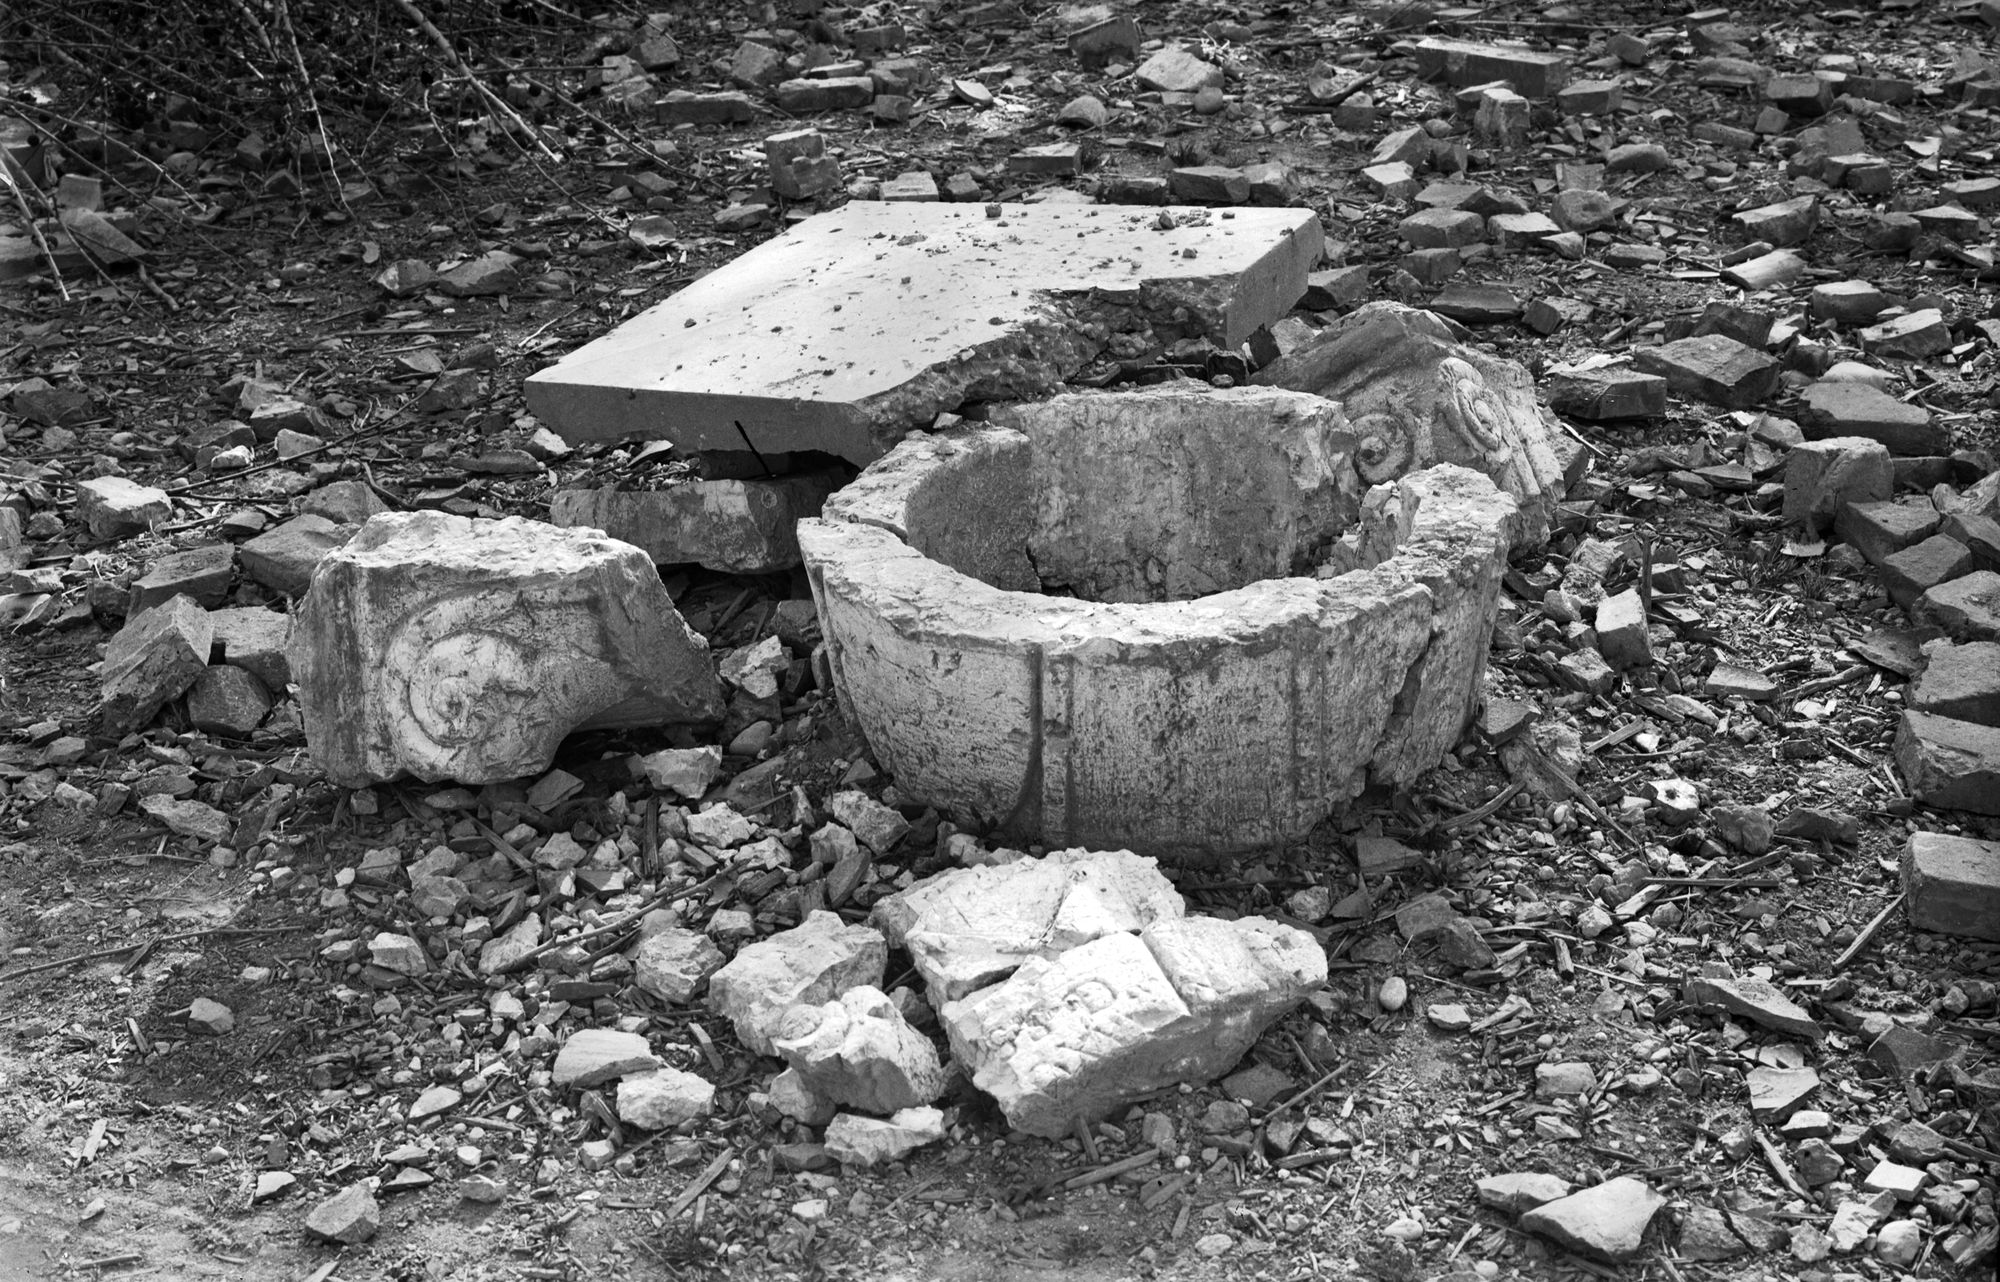 Ex convento di Santa Caterina. Frammenti del pozzo dopo il bombardamento del 13/3/1945 (negativo) di Gabinetto fotografico (XX)